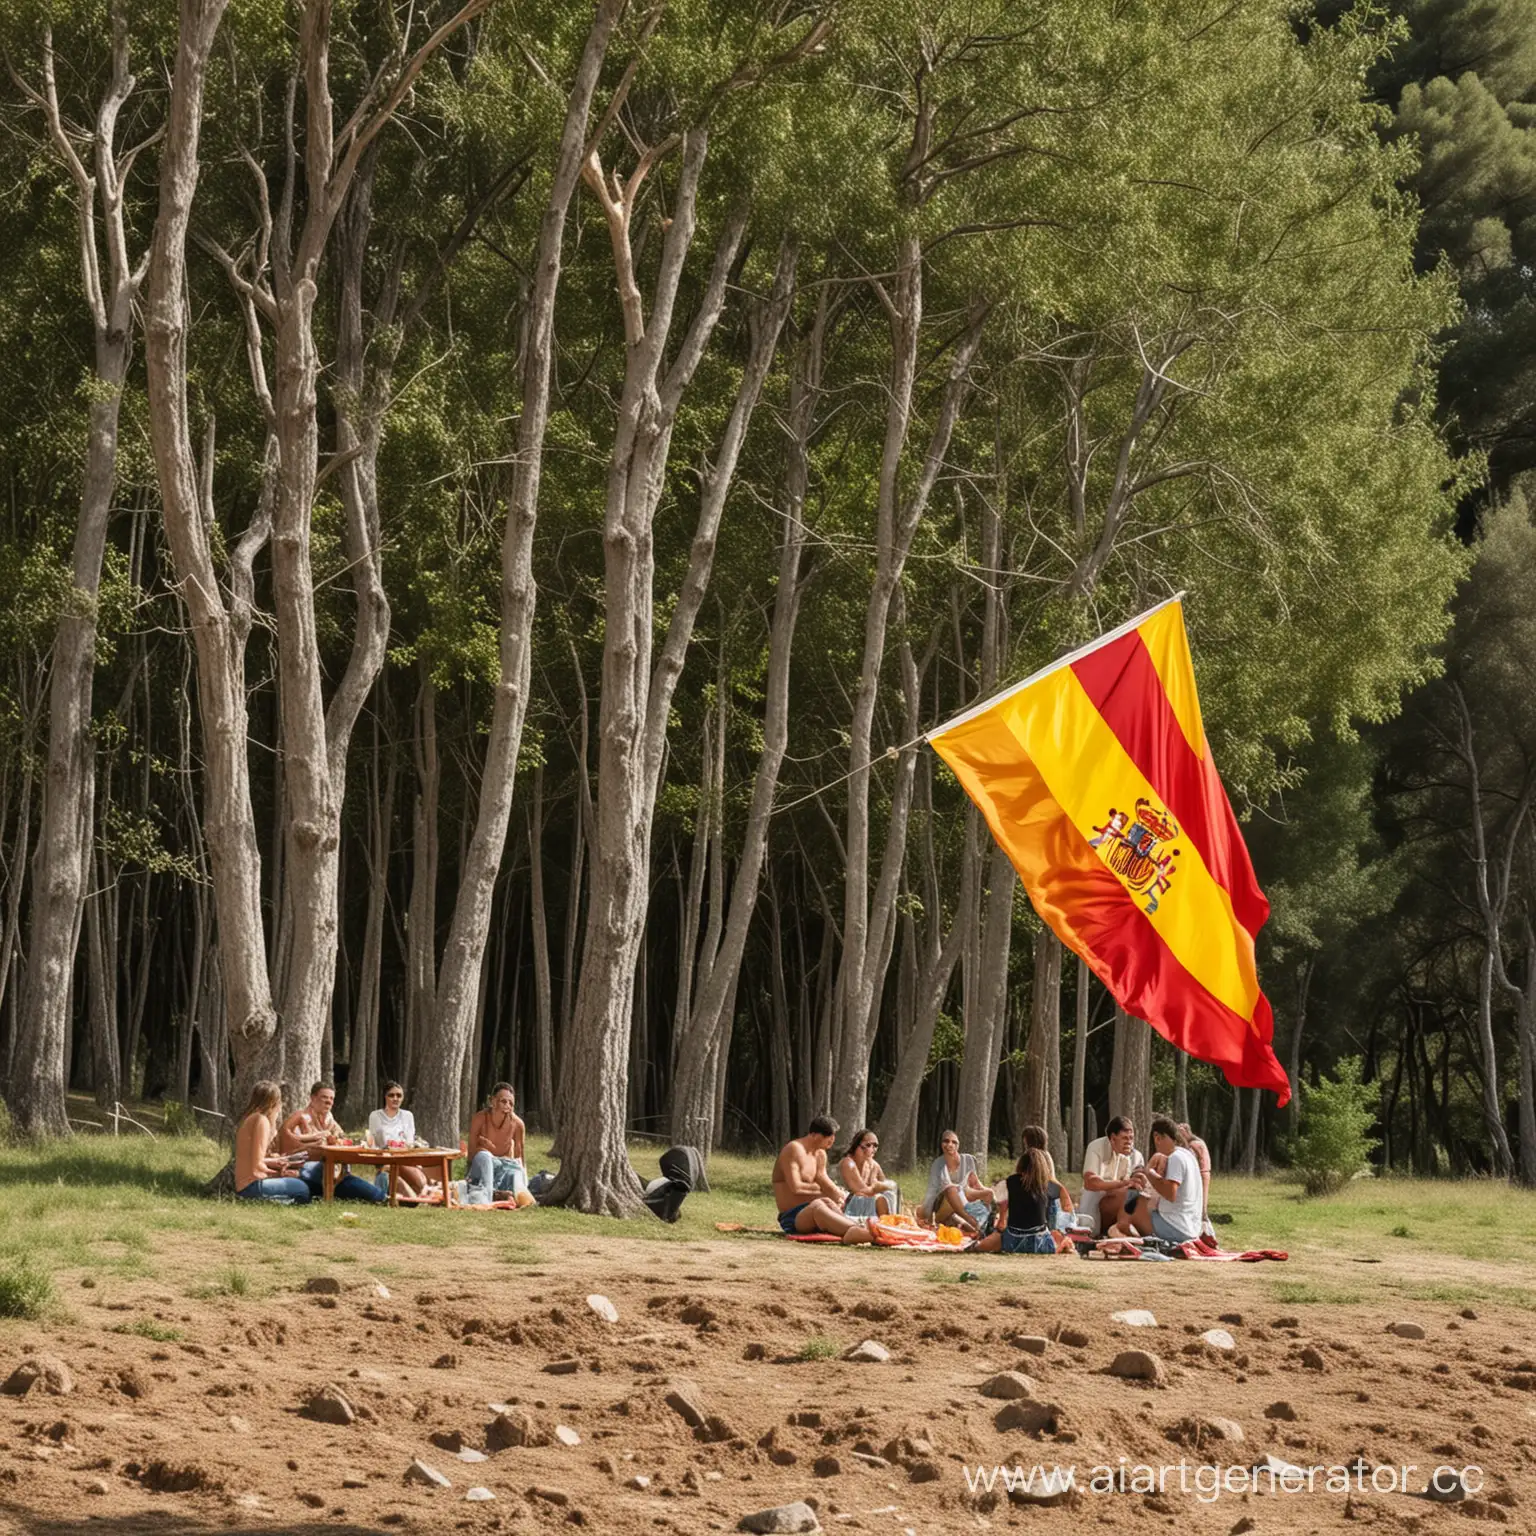 люди отдыхают в испании на природе во время обеденного перерыва и рядом флаг испании